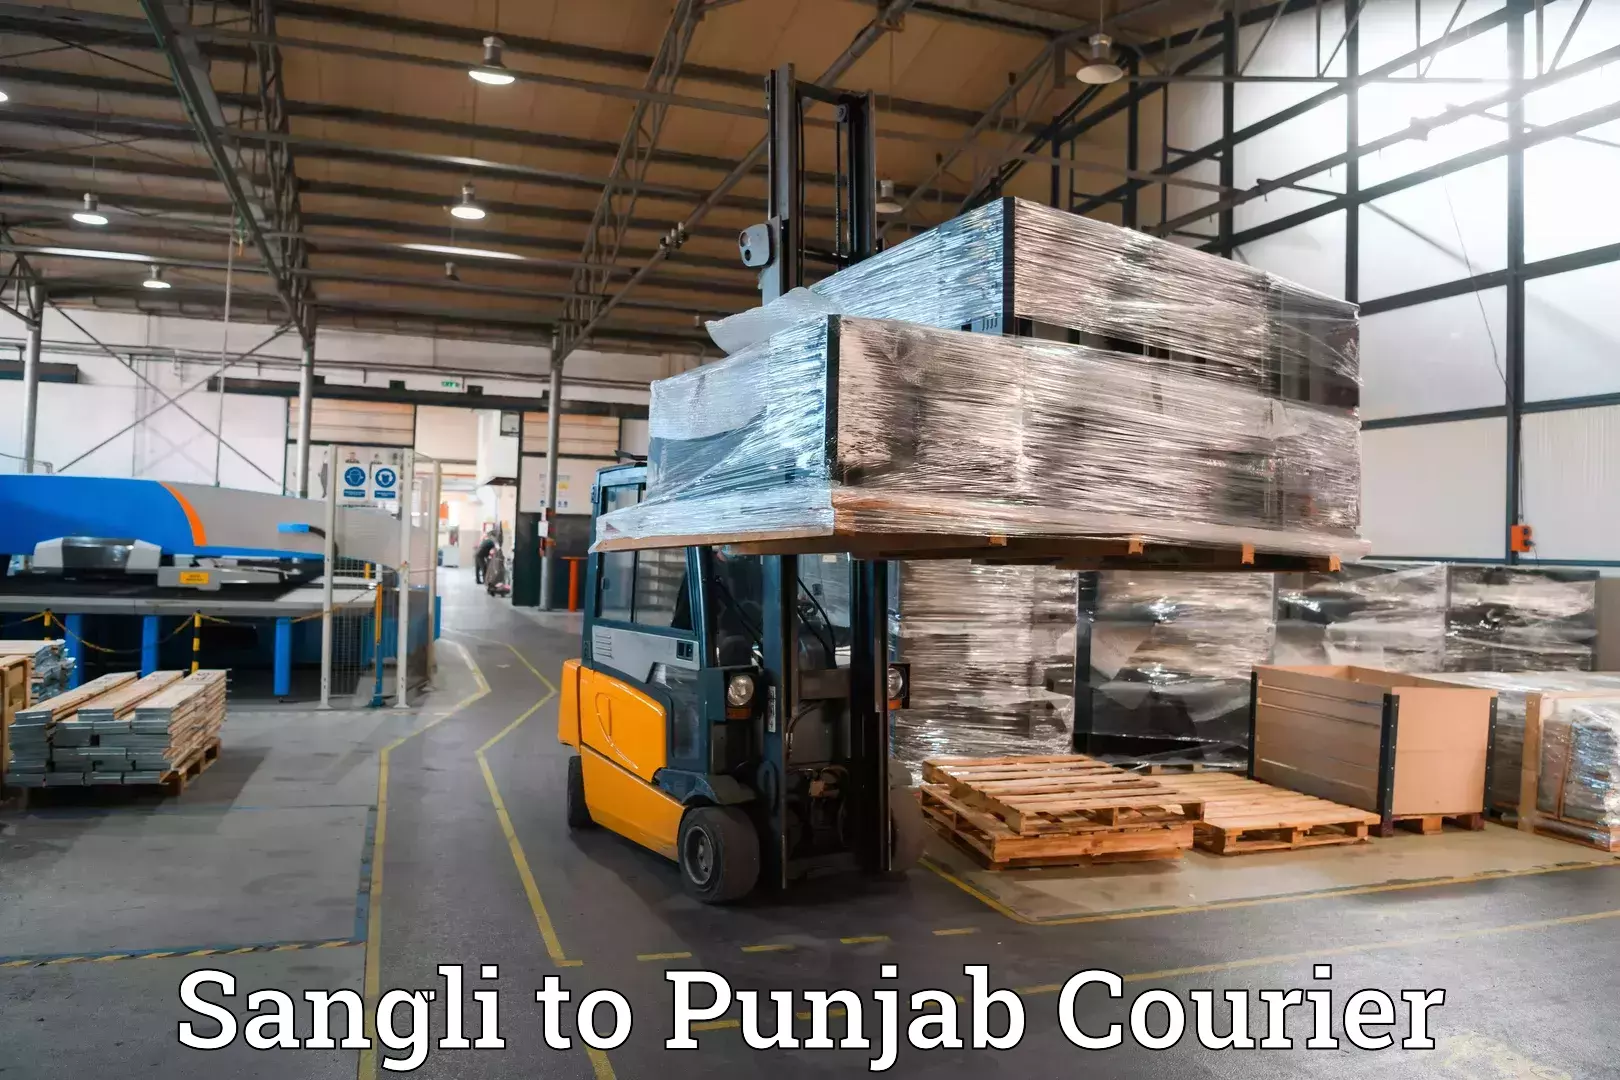 Baggage transport management Sangli to Punjab